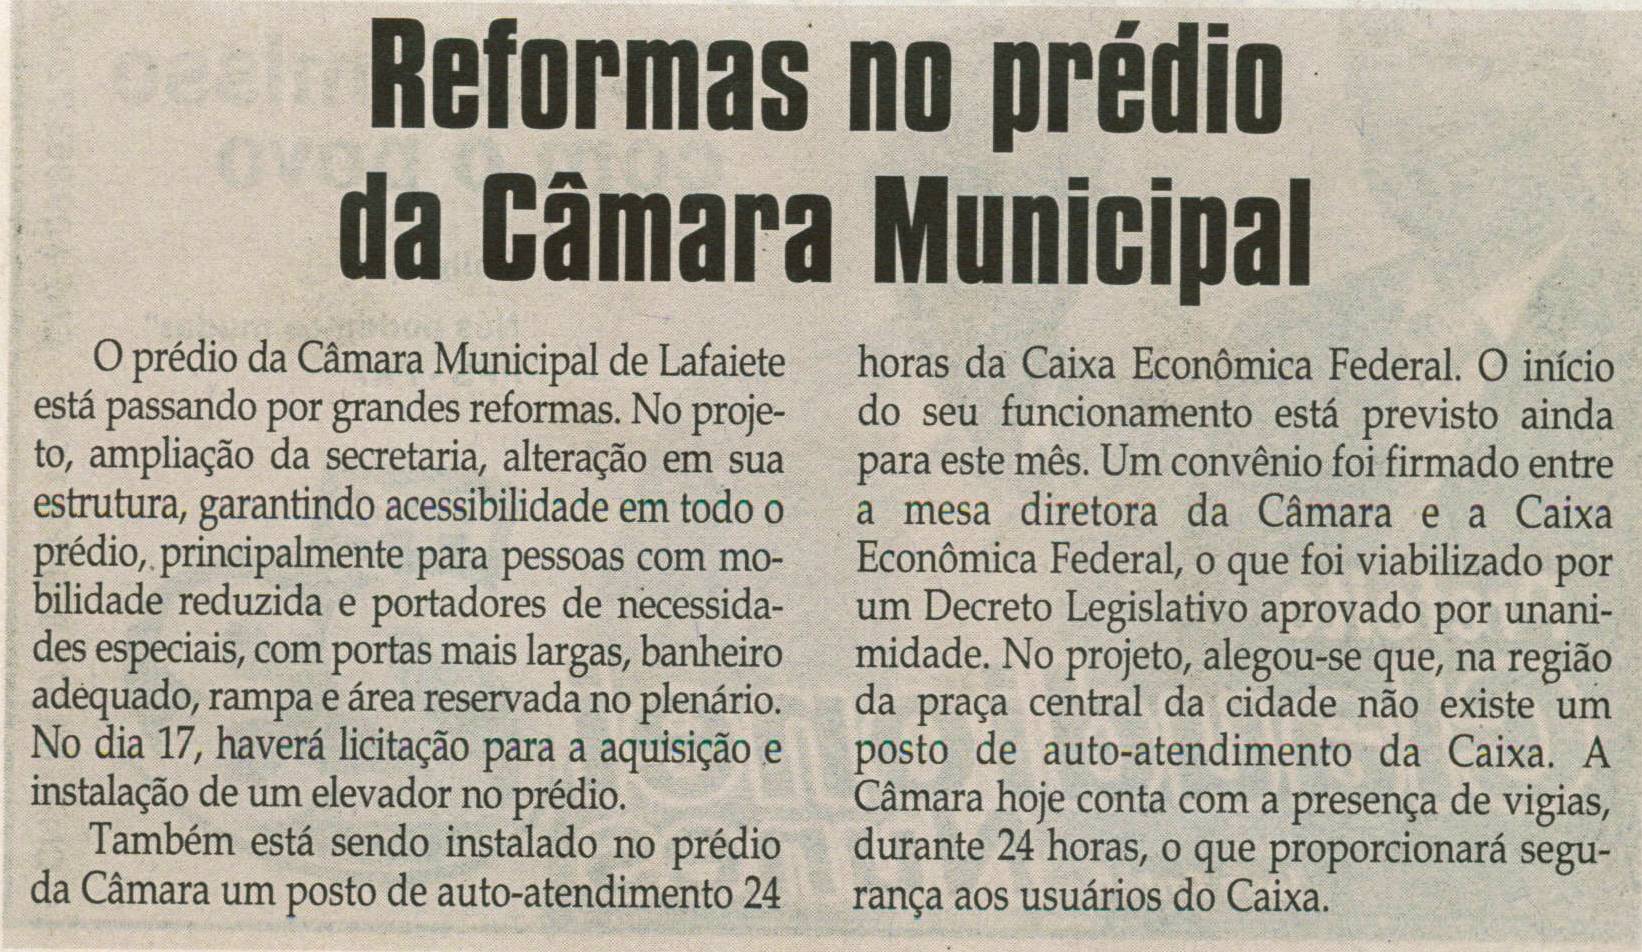 Reformas no prédio da Câmara Municipal. Jornal Correio da Cidade, 13 set. 2008, p. 06.